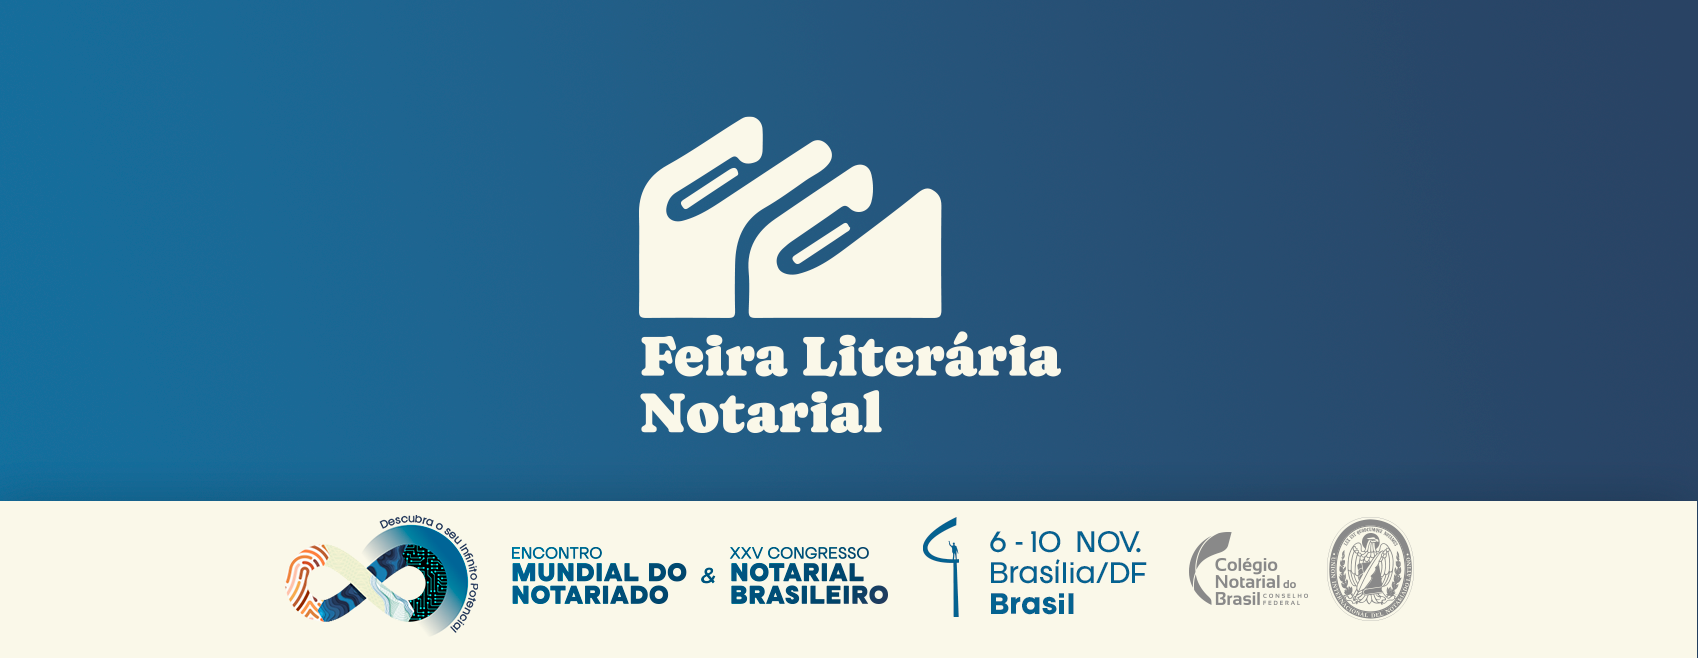 Feira Literária Notarial Traz Ao Brasil Principais Obras Do Notariado Nacional E Internacional